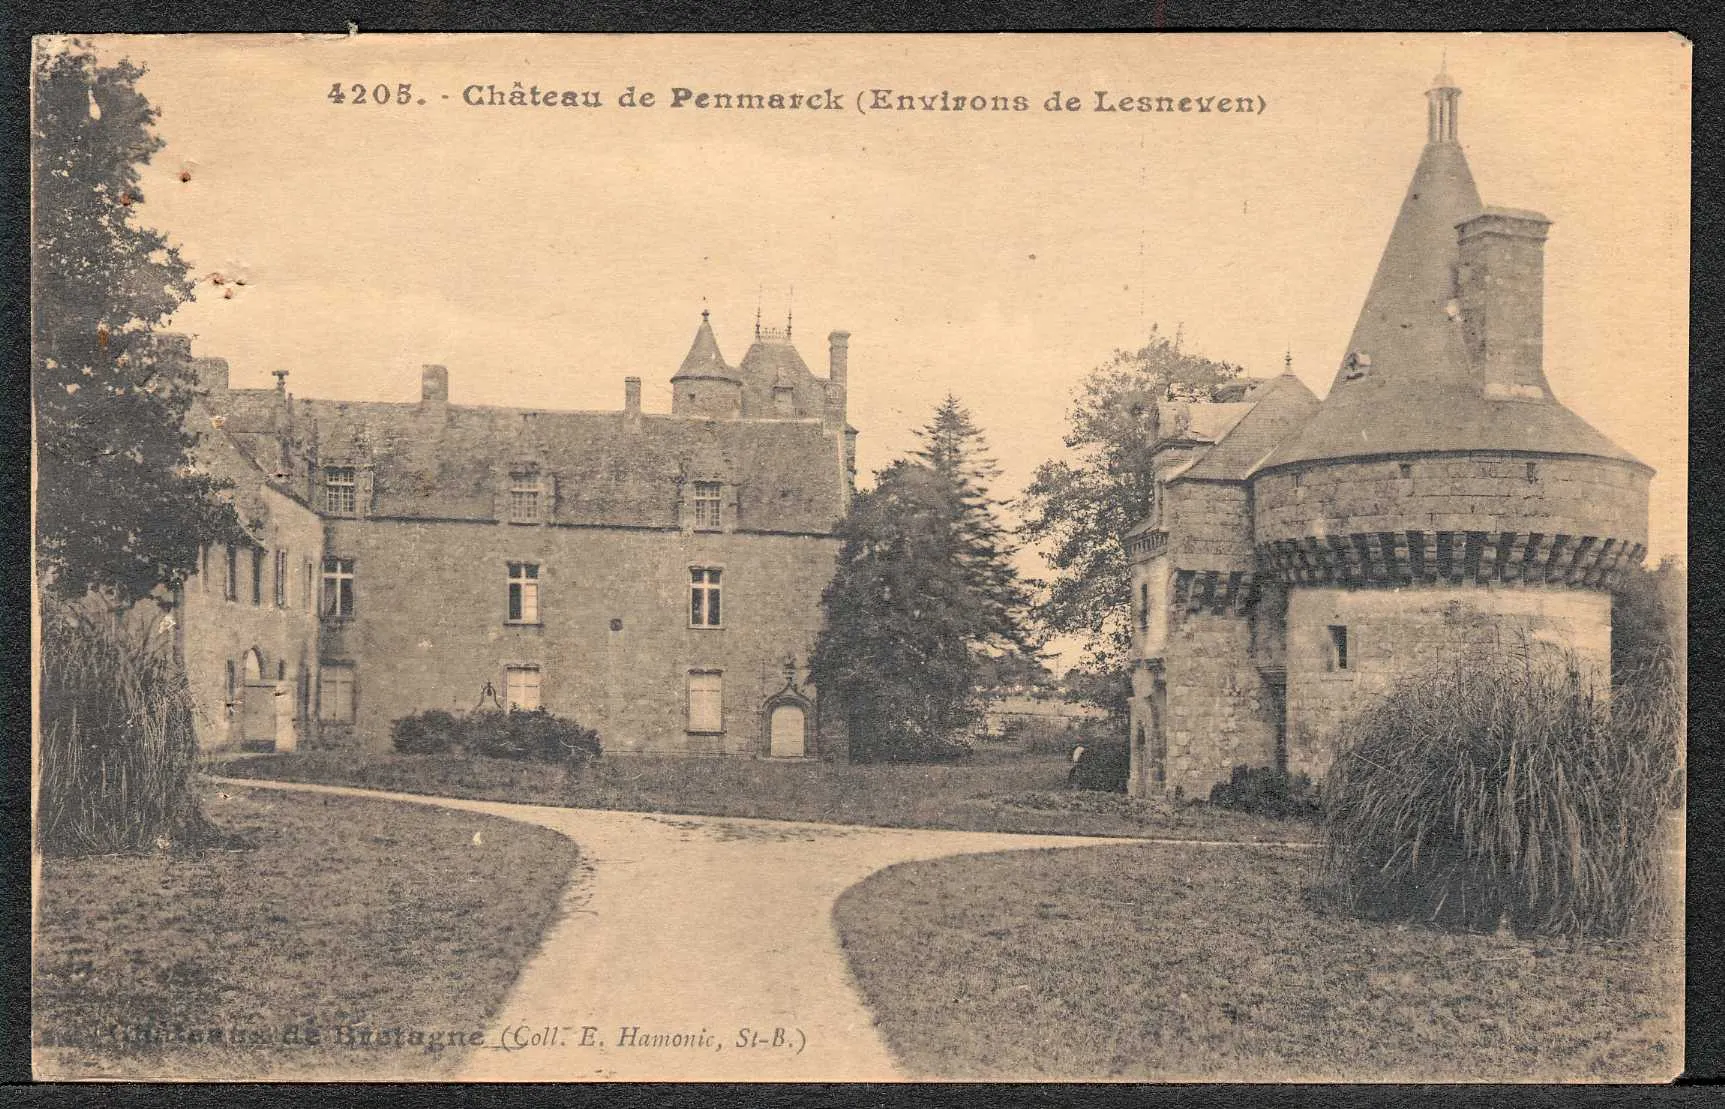 Photo showing: Jardins et château de Penmarc'h, qui fut racheté par la ville de Brest en 1992. Il devint une colonie de vacances et école de plein air pour les enfants brestois.